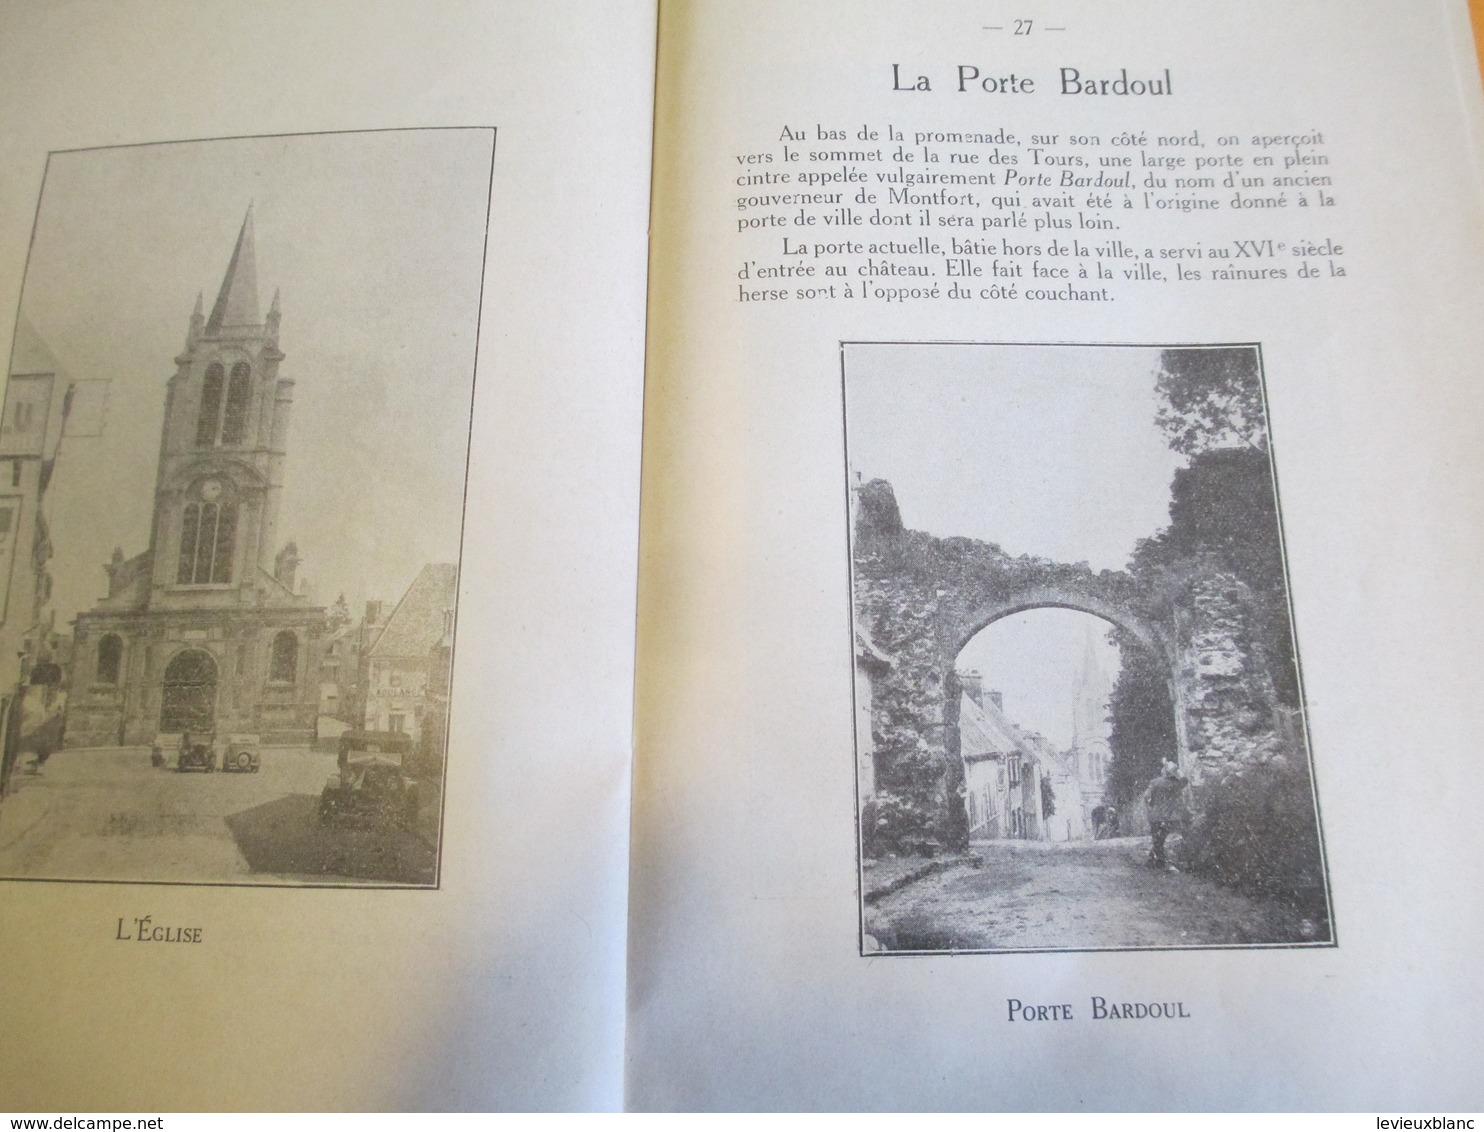 Guide Historique du Visiteur/MONTFORT l'AMAURY/Delville/30 Illust./Carte de la Ville/ Leroy /Rambouillet//1932 PGC165